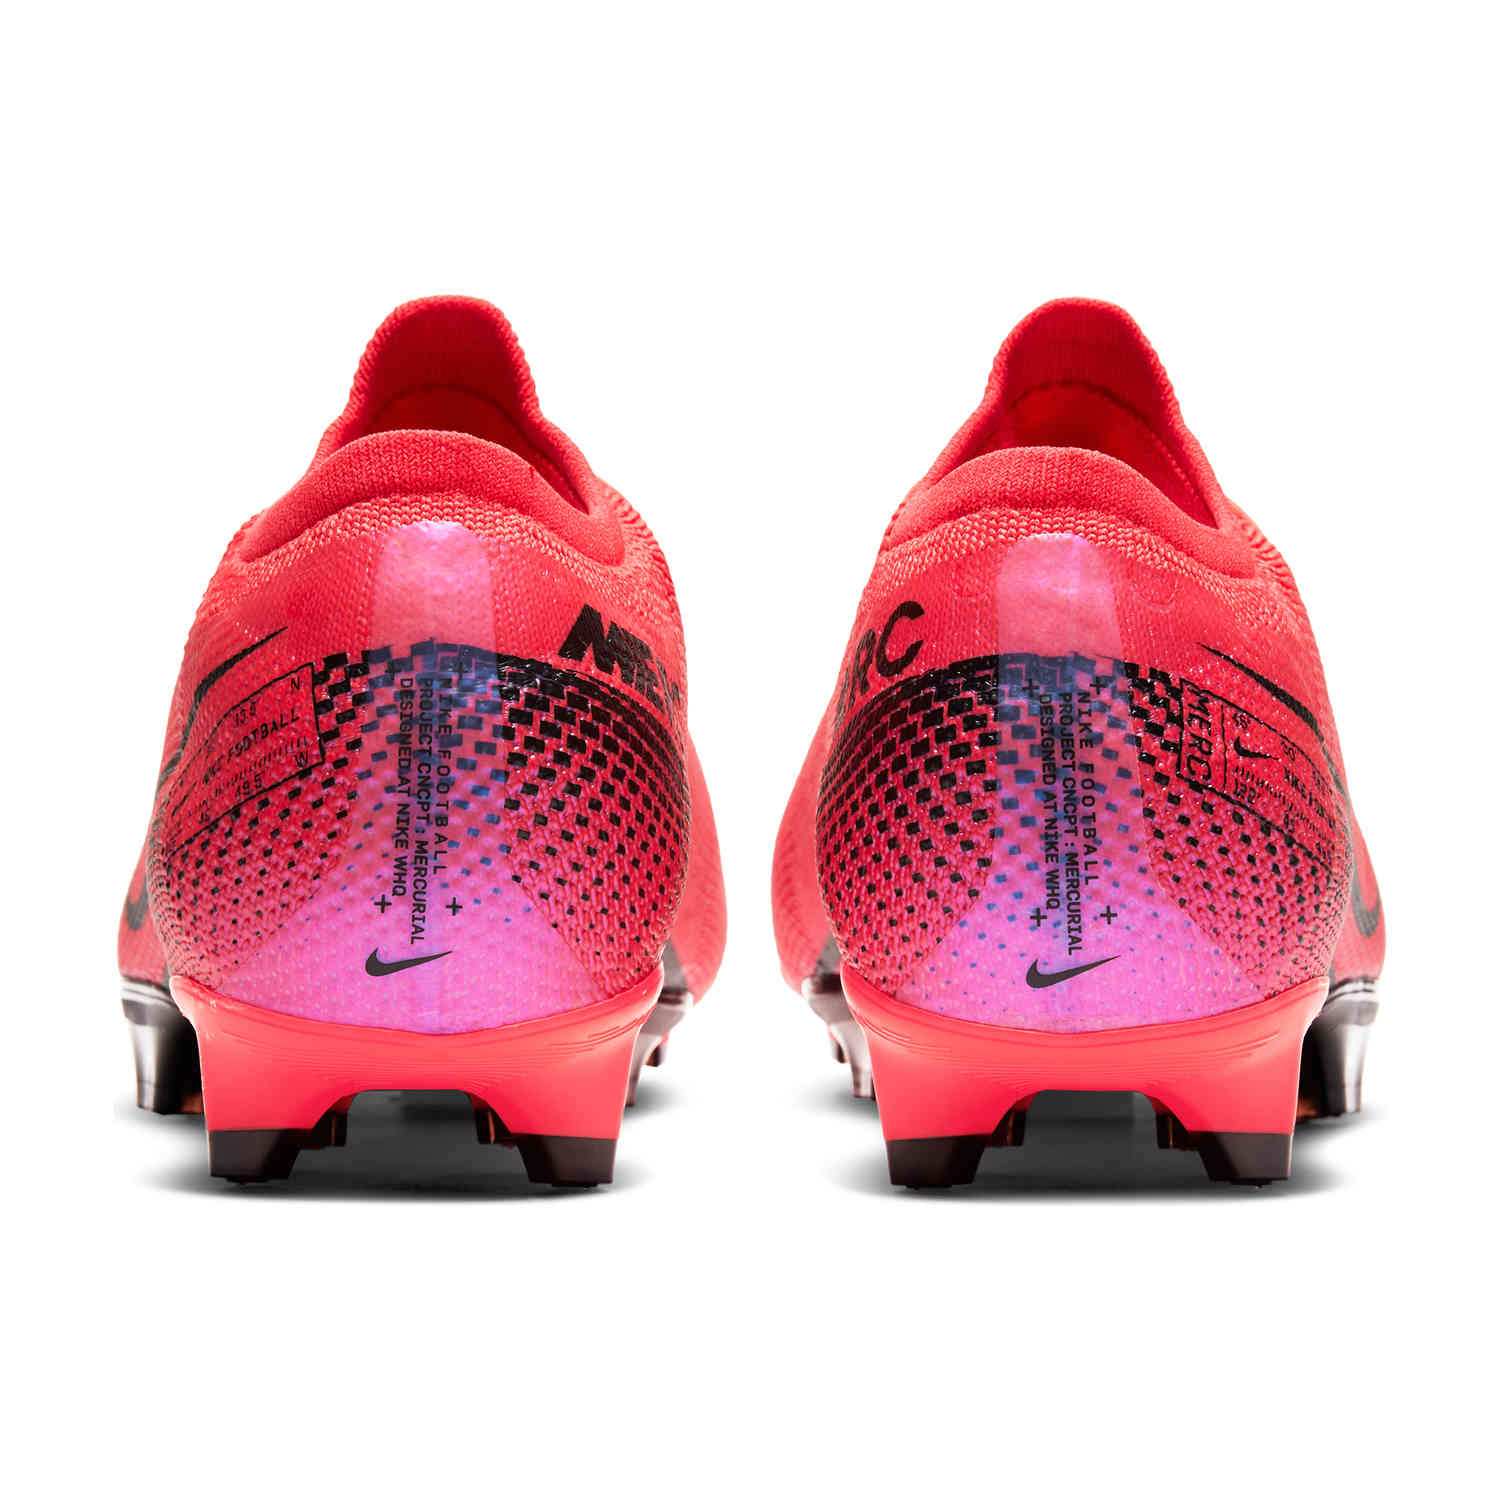 Nike Mercurial Vapor 13 Pro FG - Future 